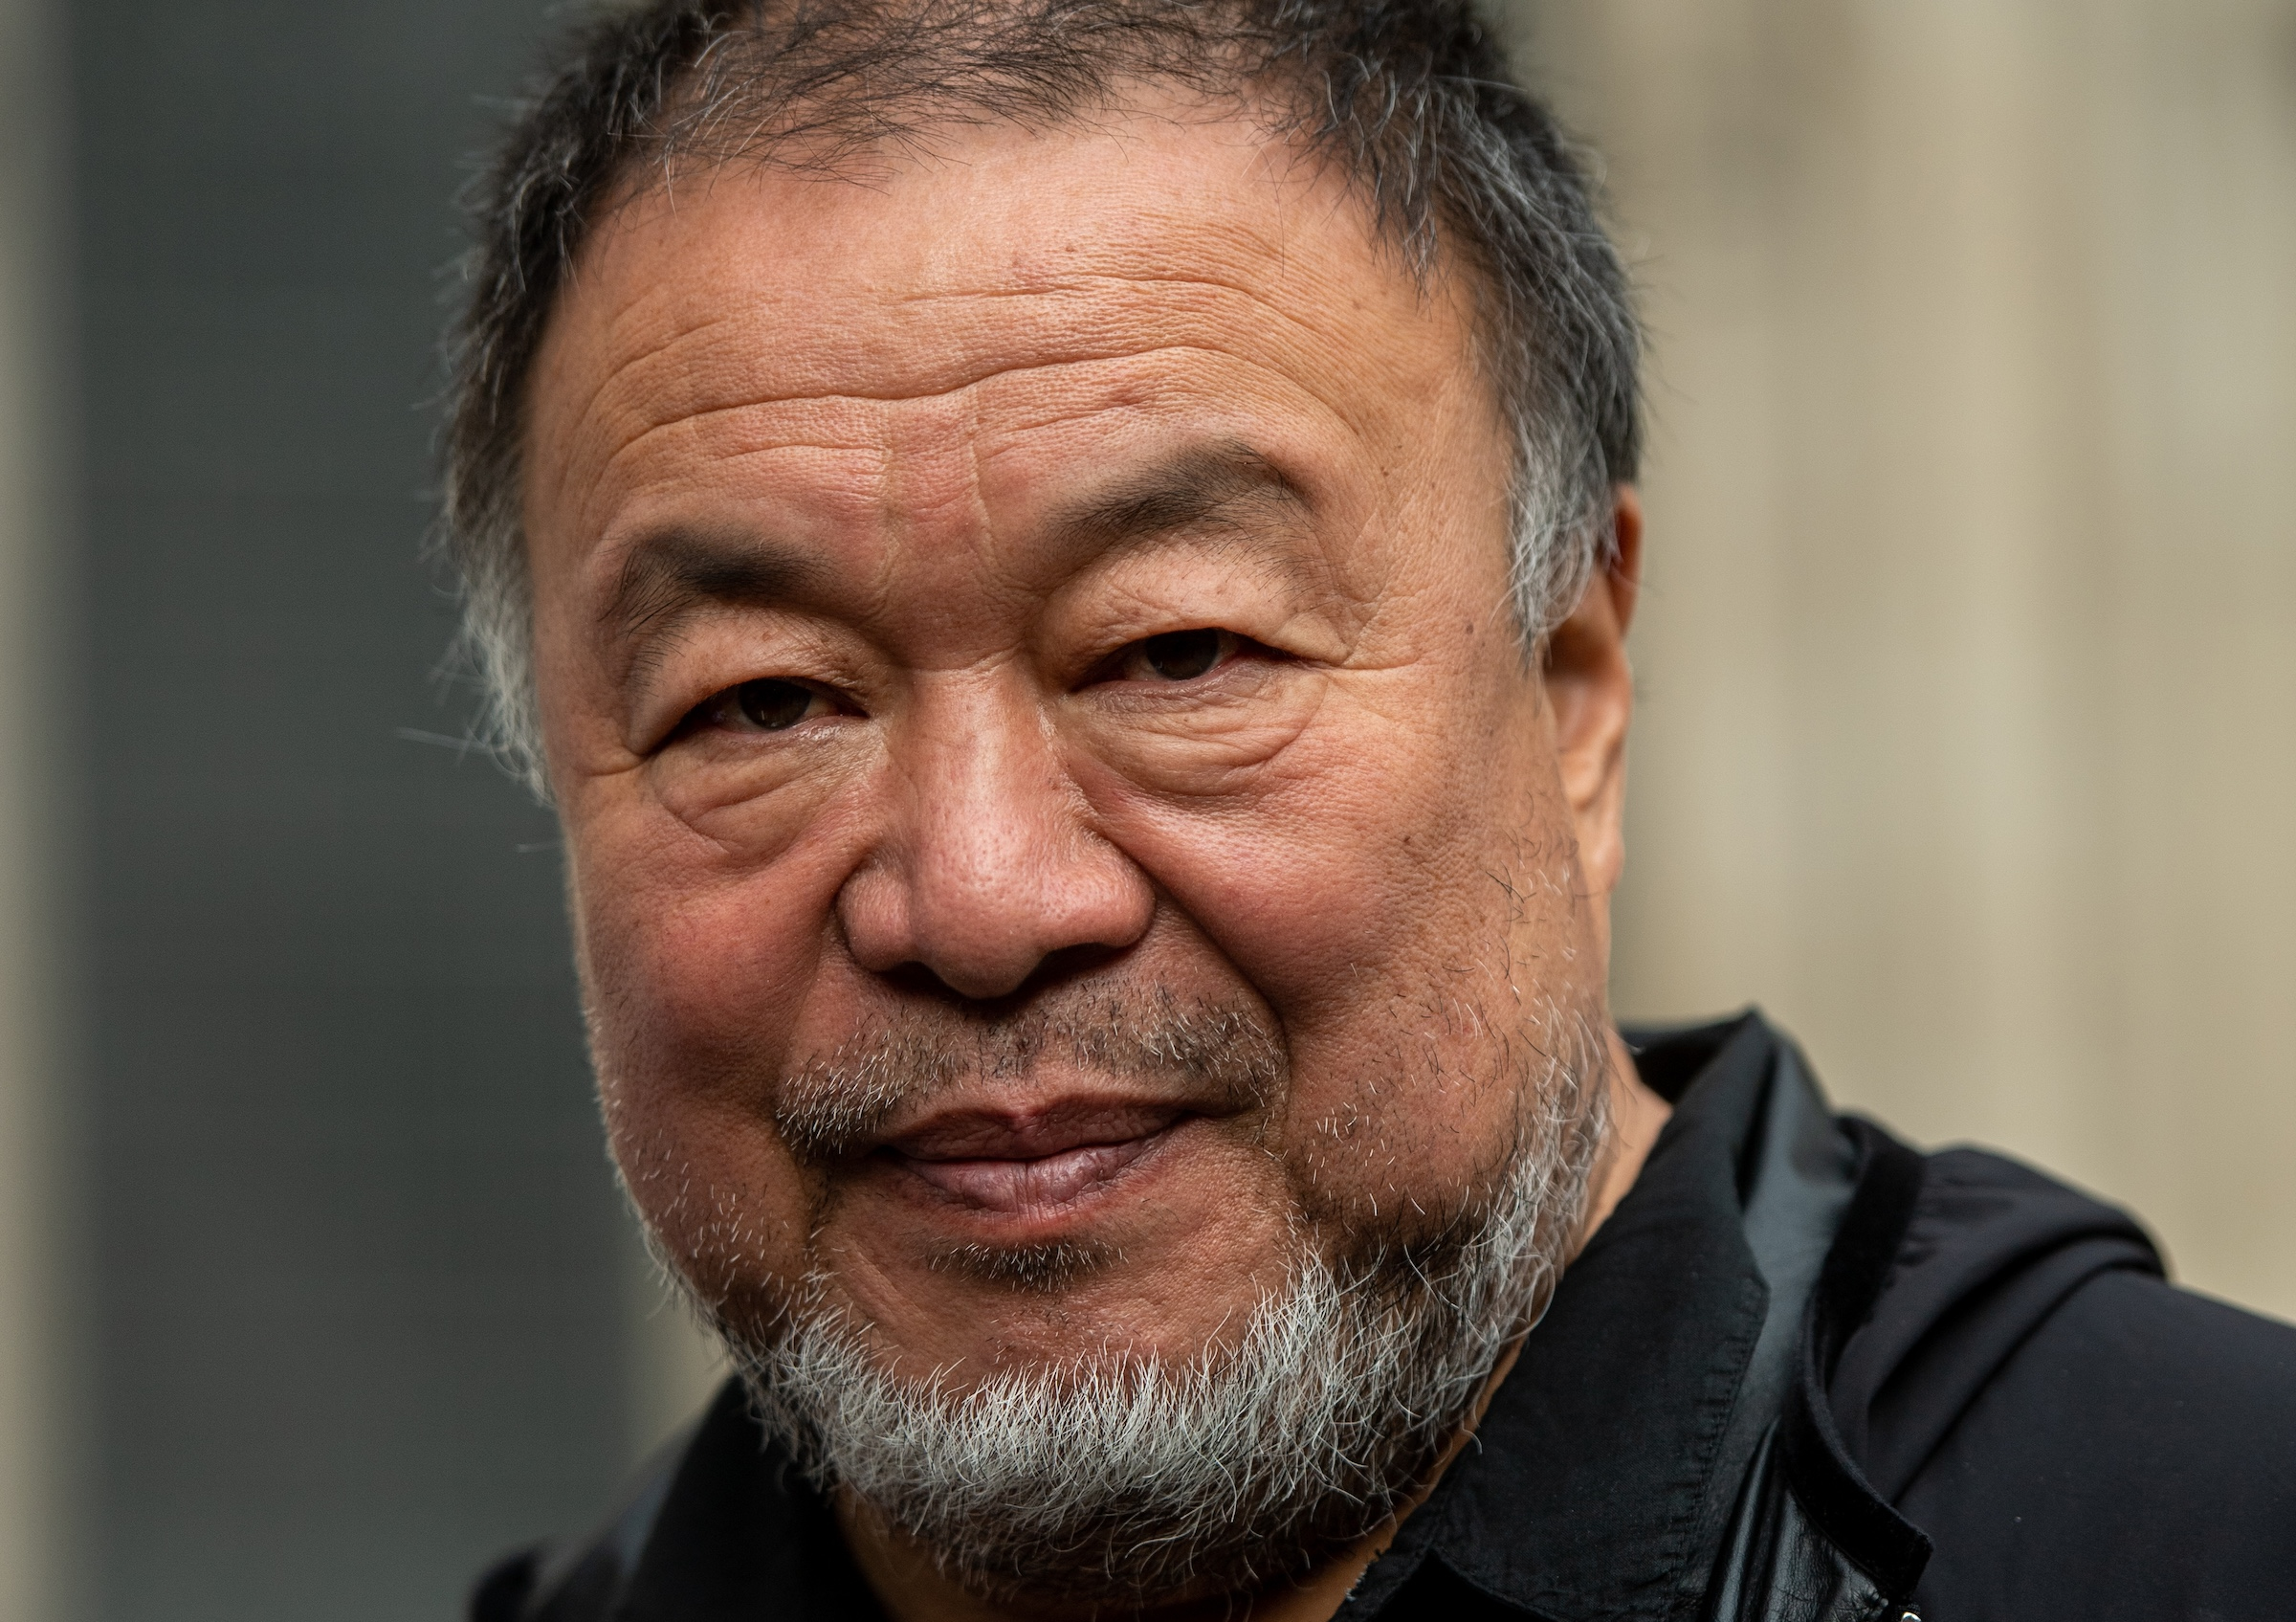 Kunstner og dissident Ai Weiwei er kjent for sin kamp for ytringsfriheten. Her er han fotografert utenfor et rettsmøte i London i oktober 2021, om hvorvidt britene kunne utlevere varsleren Julian Assange til USA. (Foto: Chris J. Ratcliffe/Getty.)